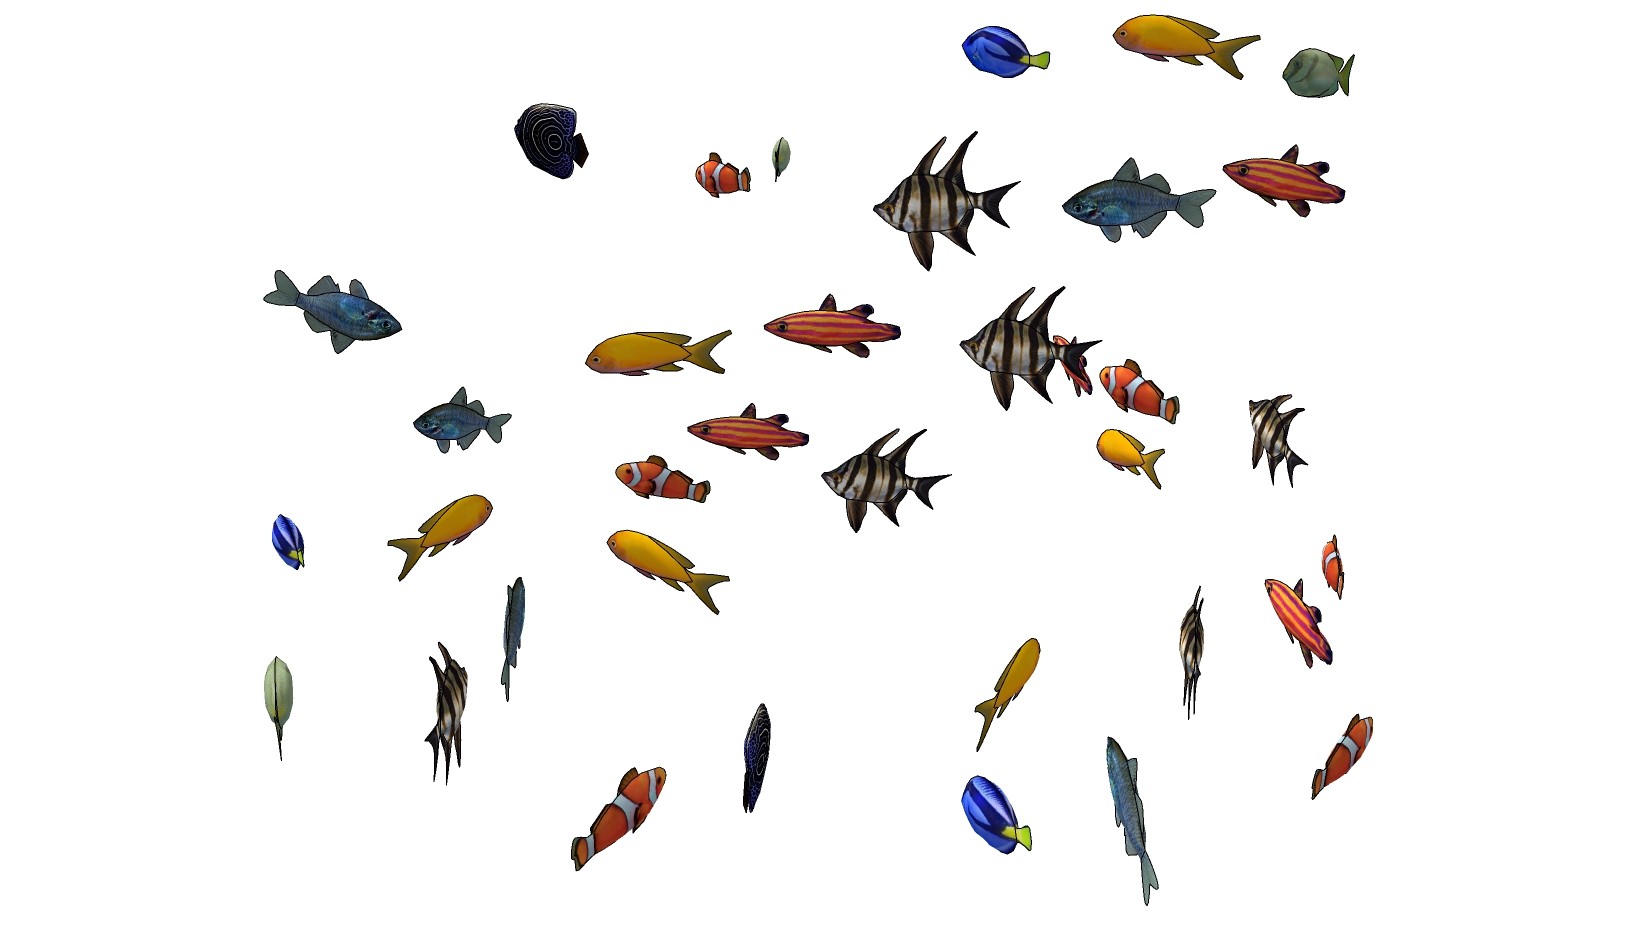 热带鱼 小丑鱼 组合动物模型su草图模型下载